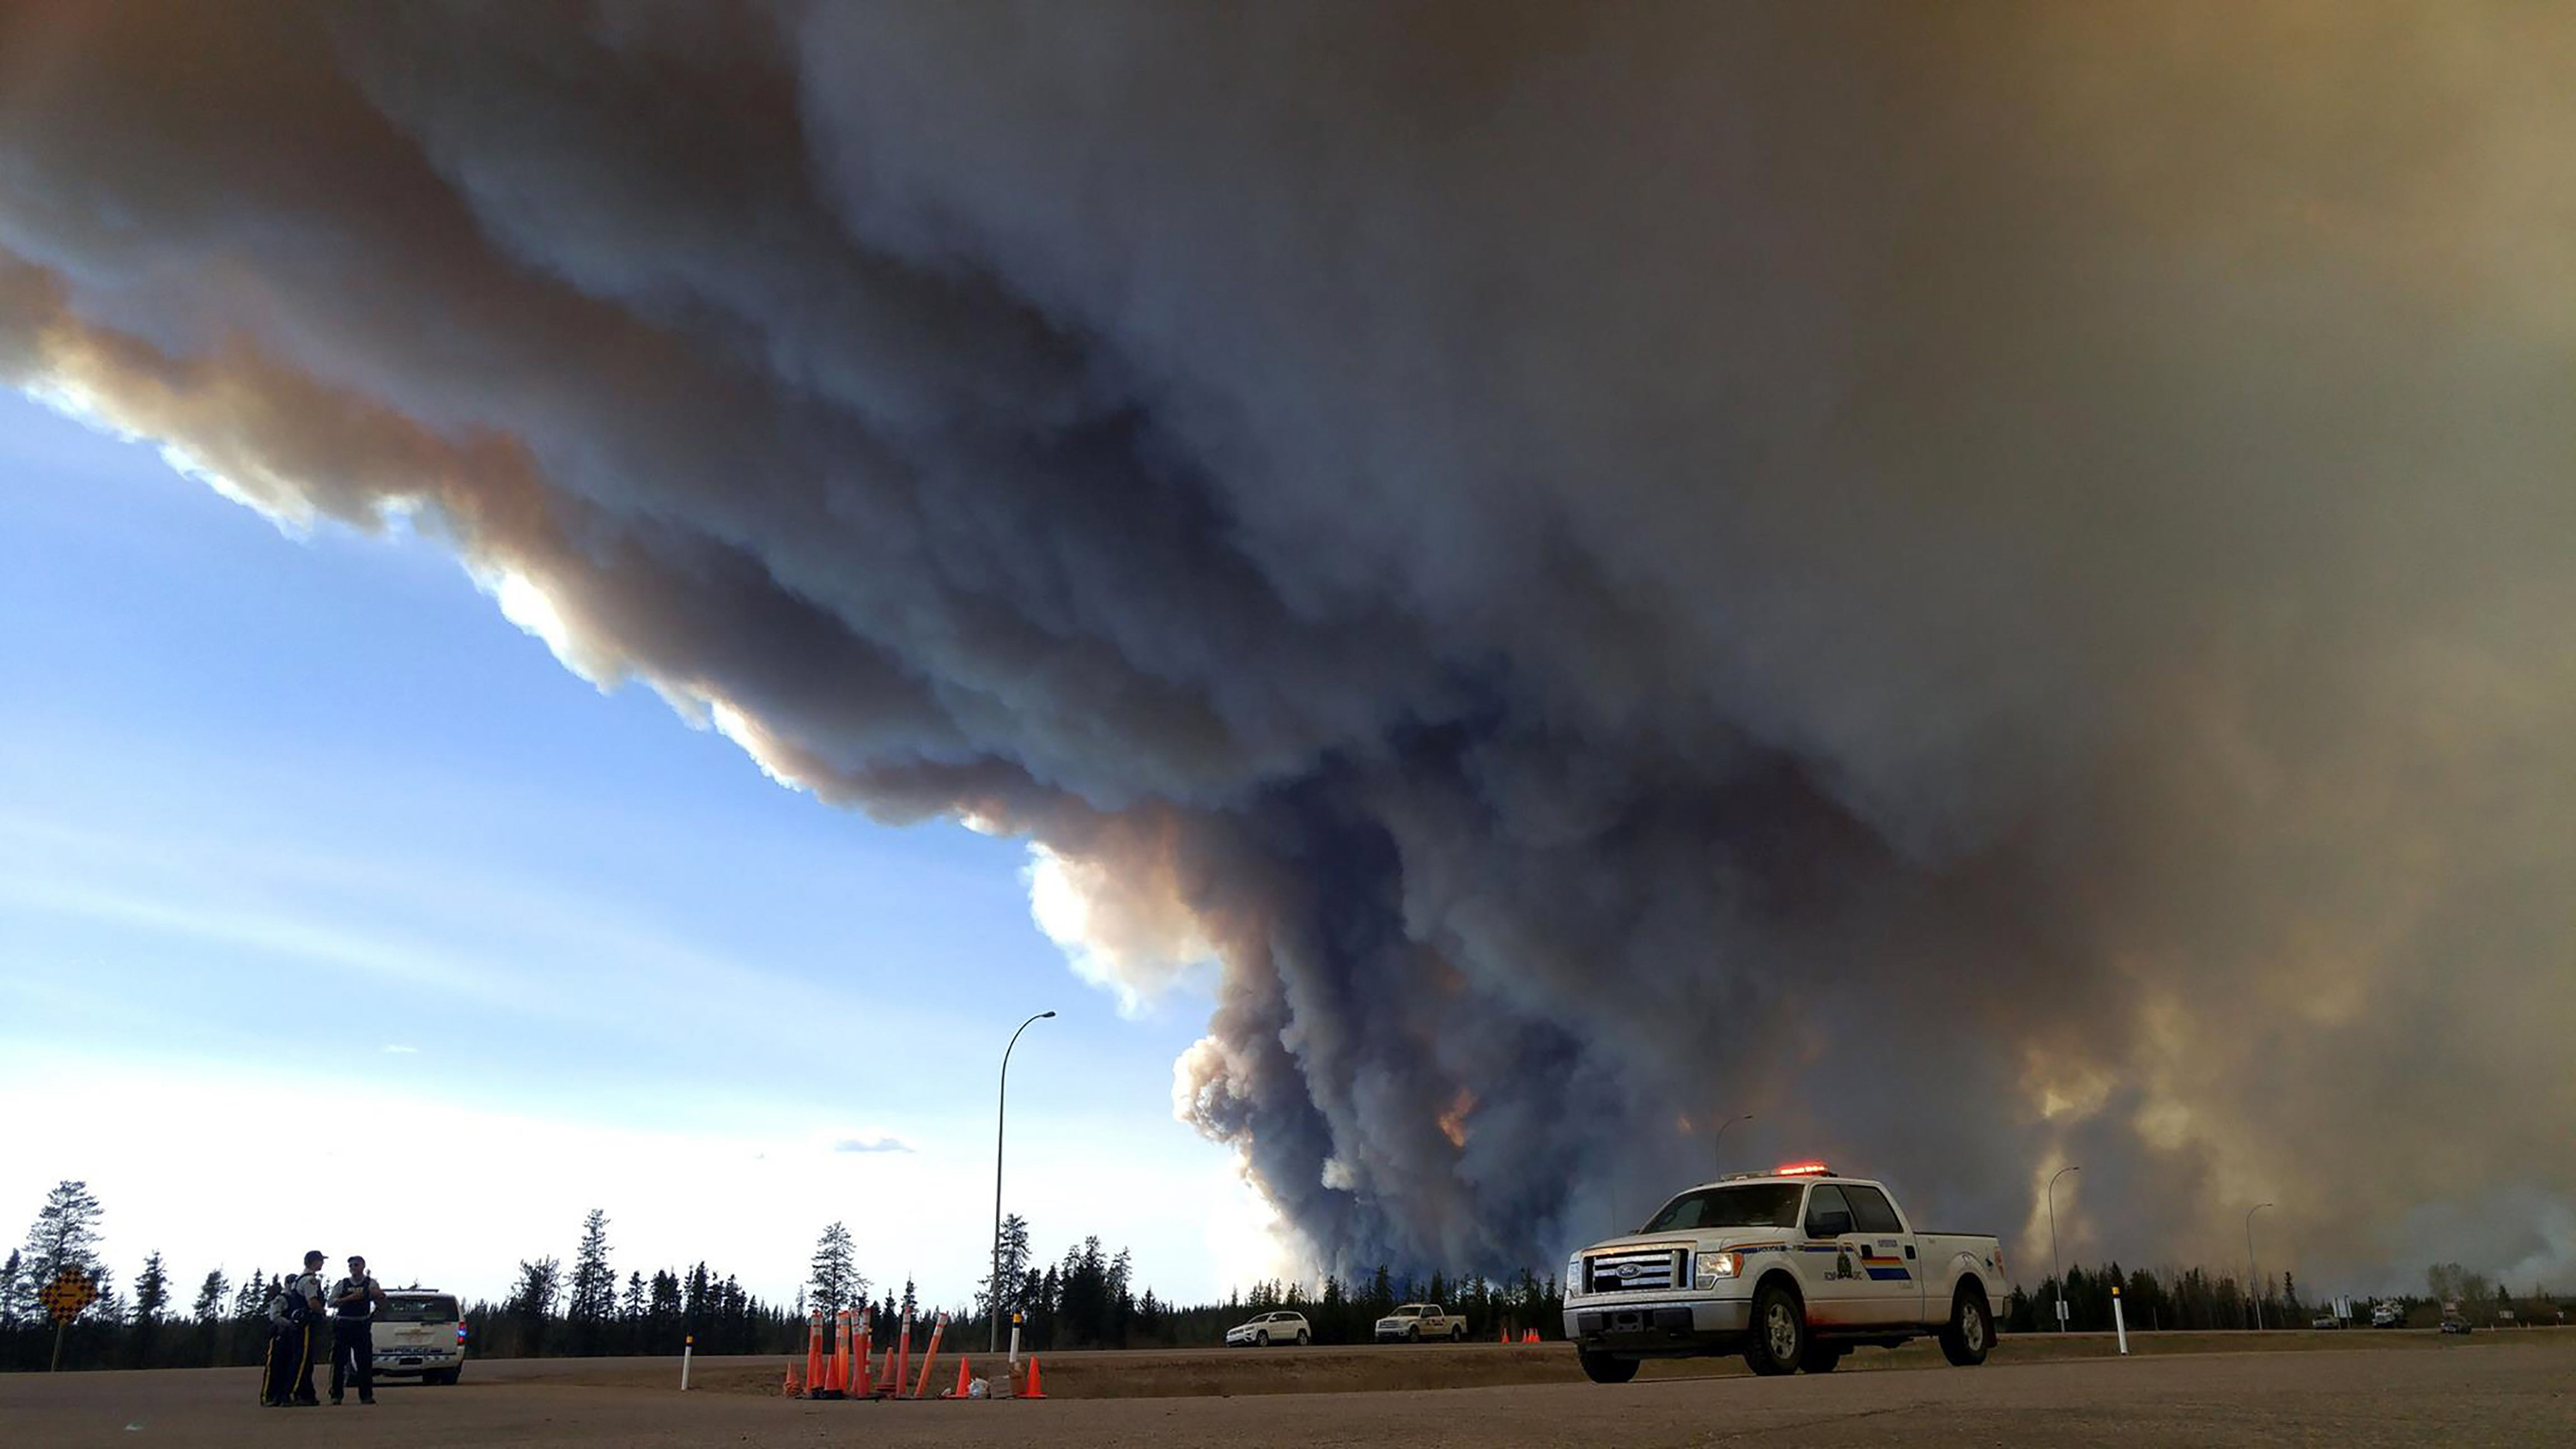 weather aids firefighters battling blaze in canada oil region